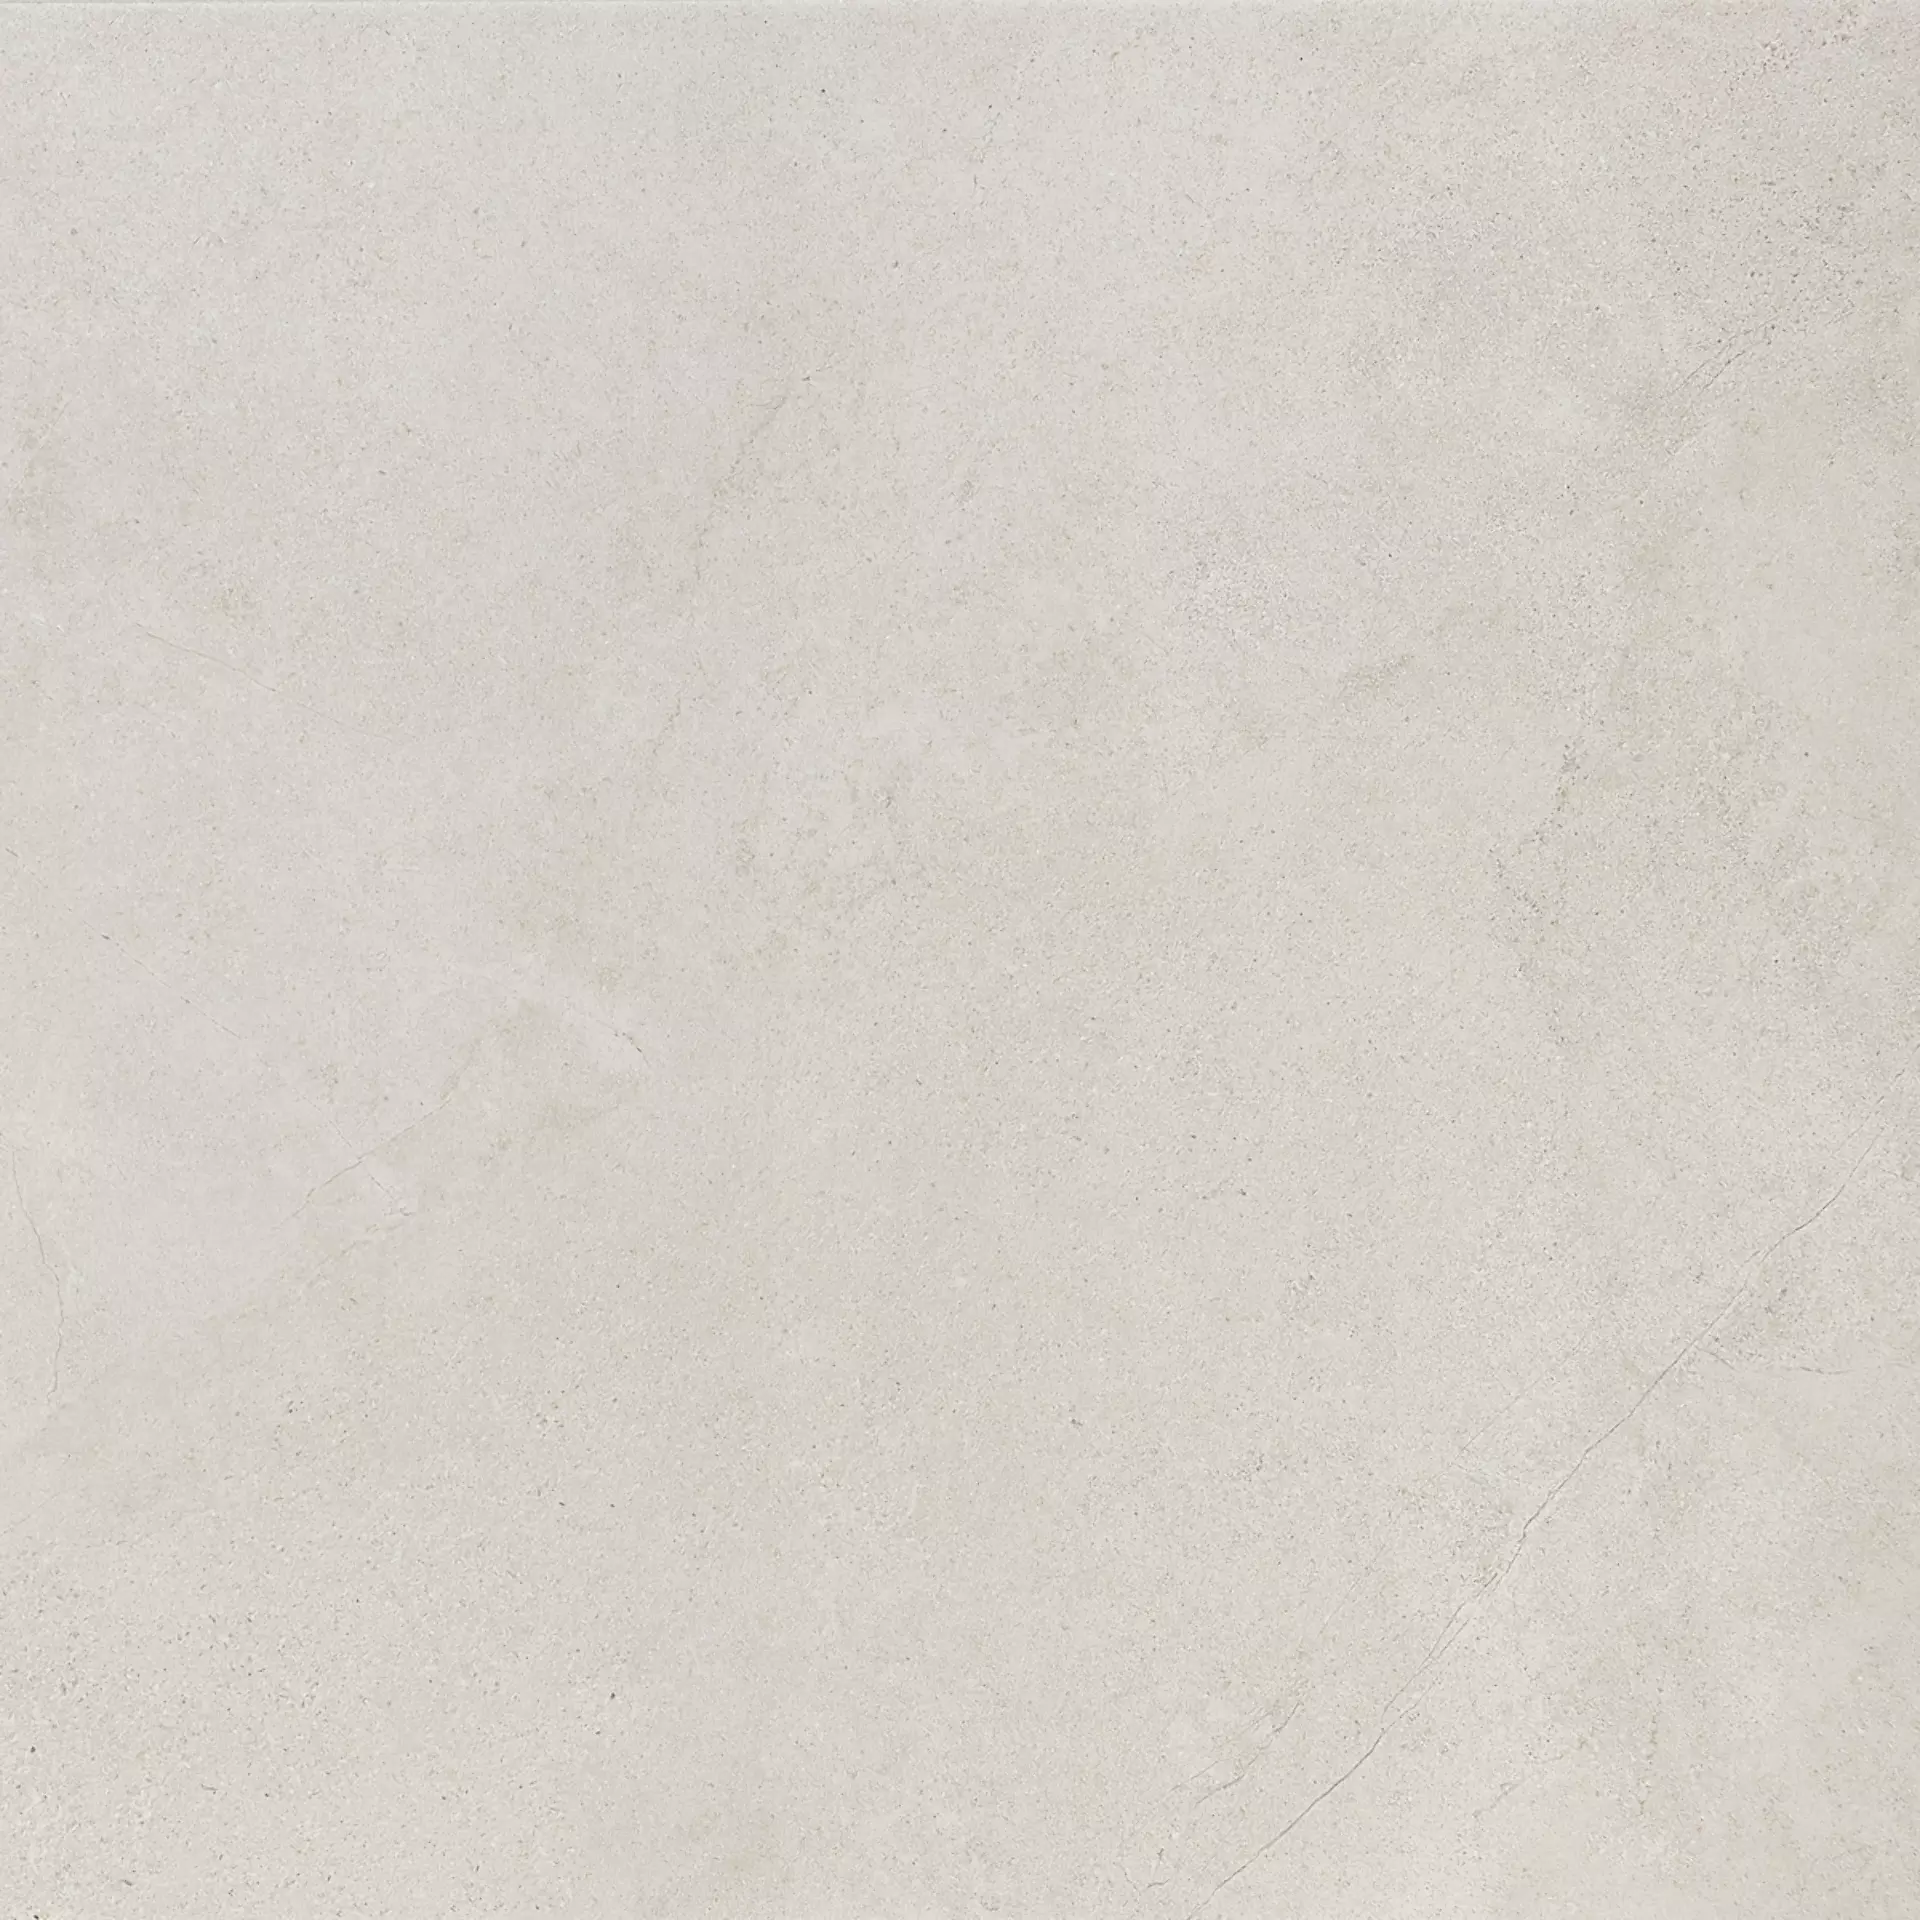 Marazzi Mystone Kashmir Bianco Naturale – Matt MLP7 75x75cm rectified 9,5mm